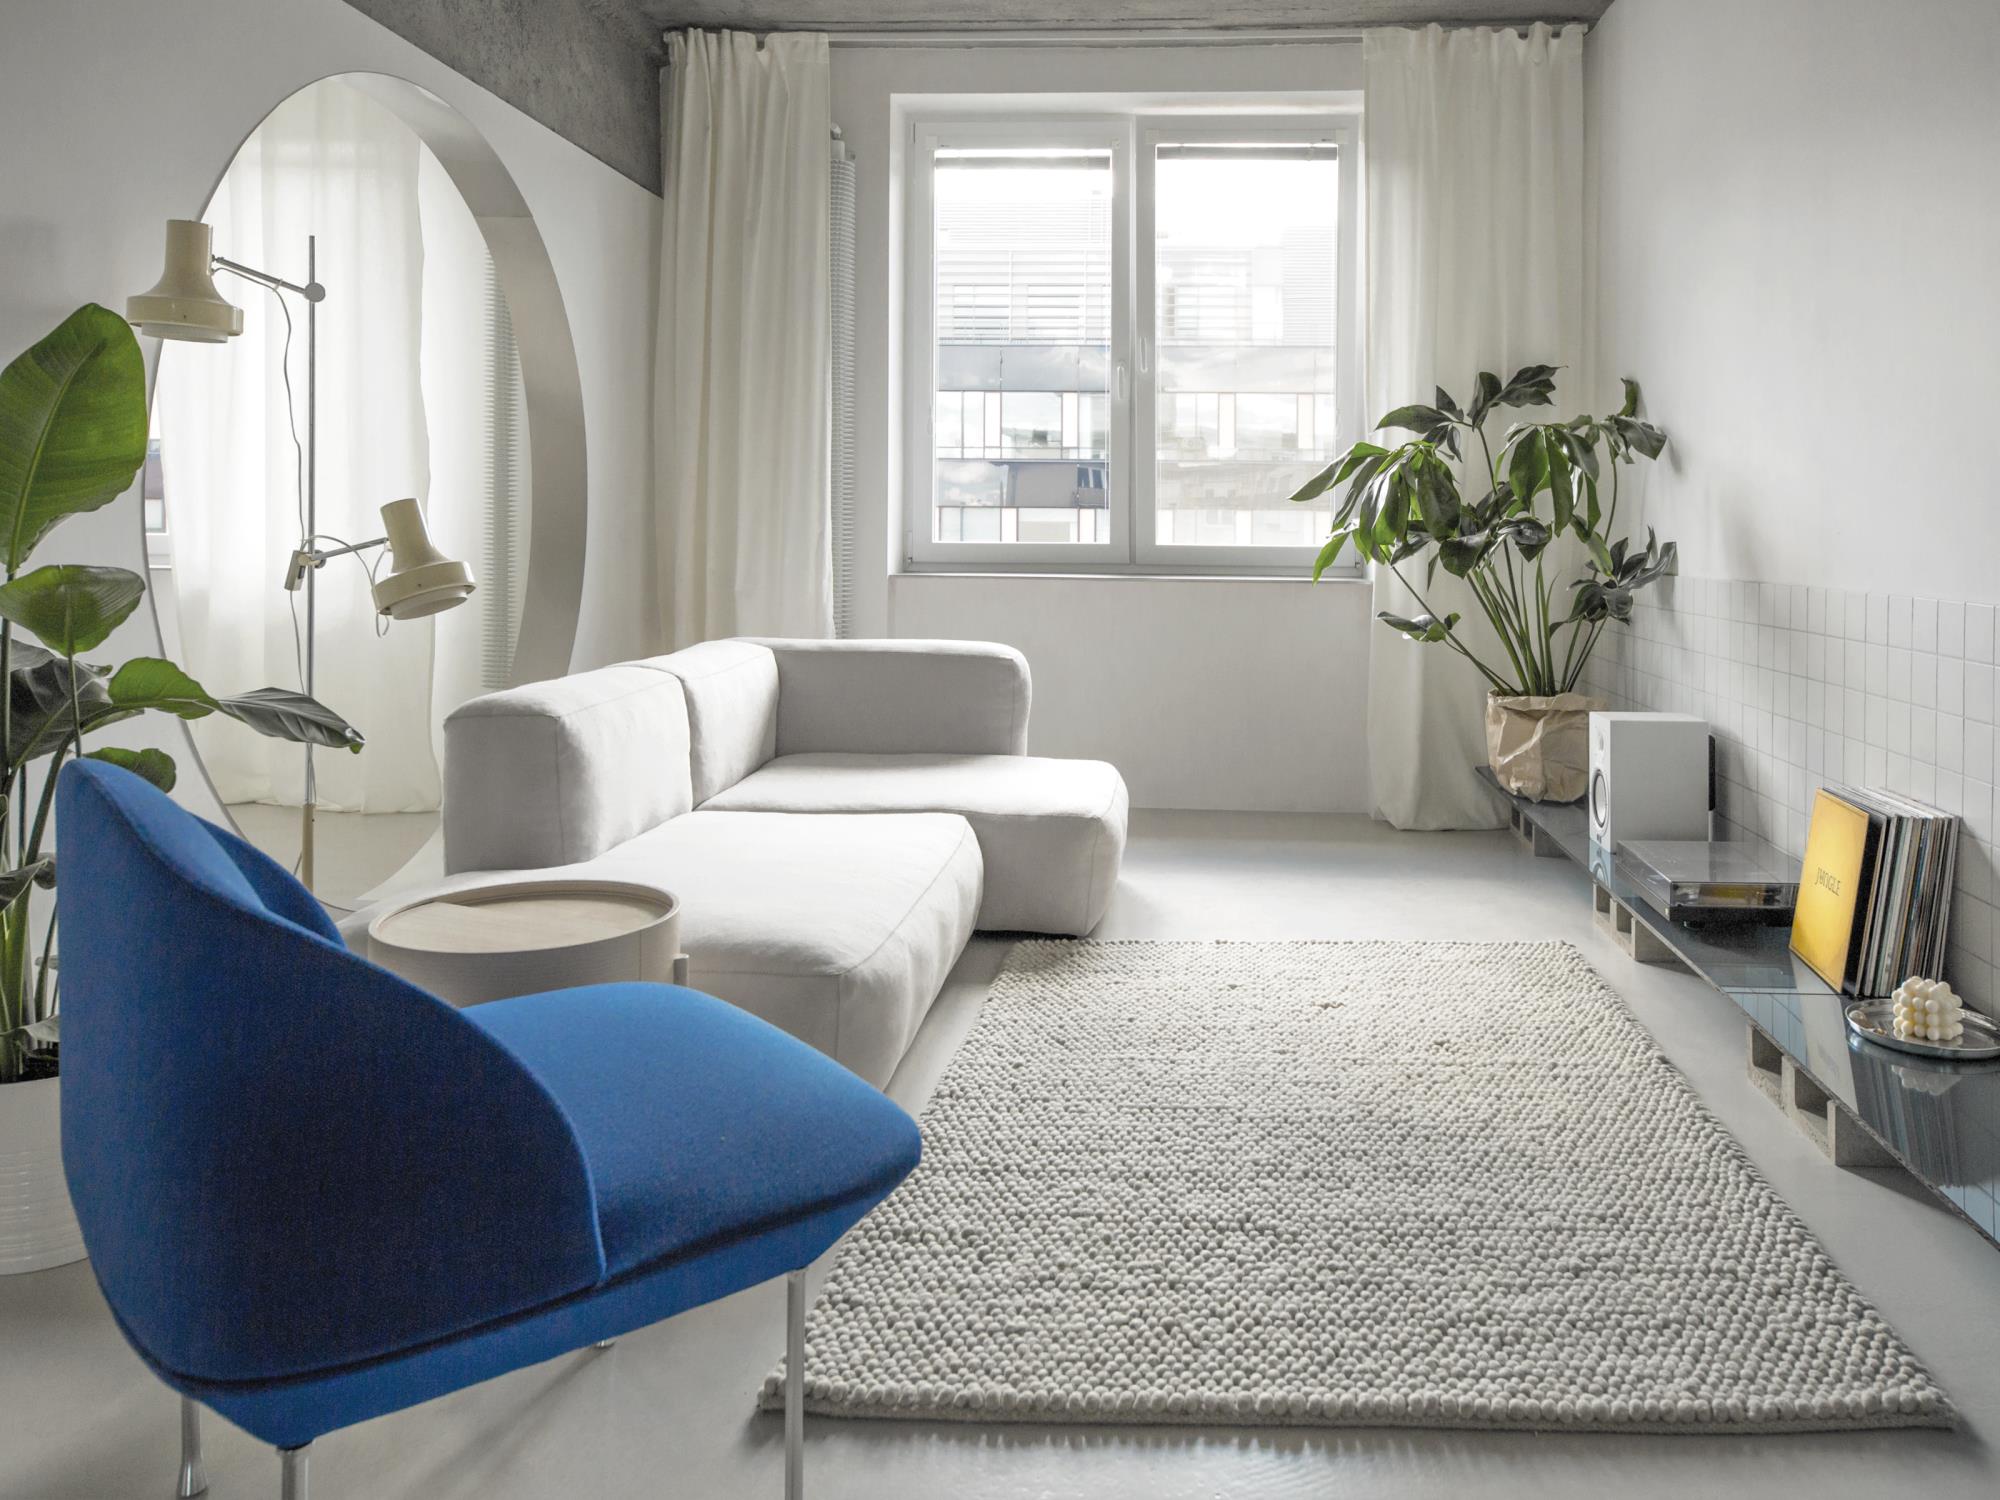 pohodlný a krásny interiér bielej farby s modrým kreslom